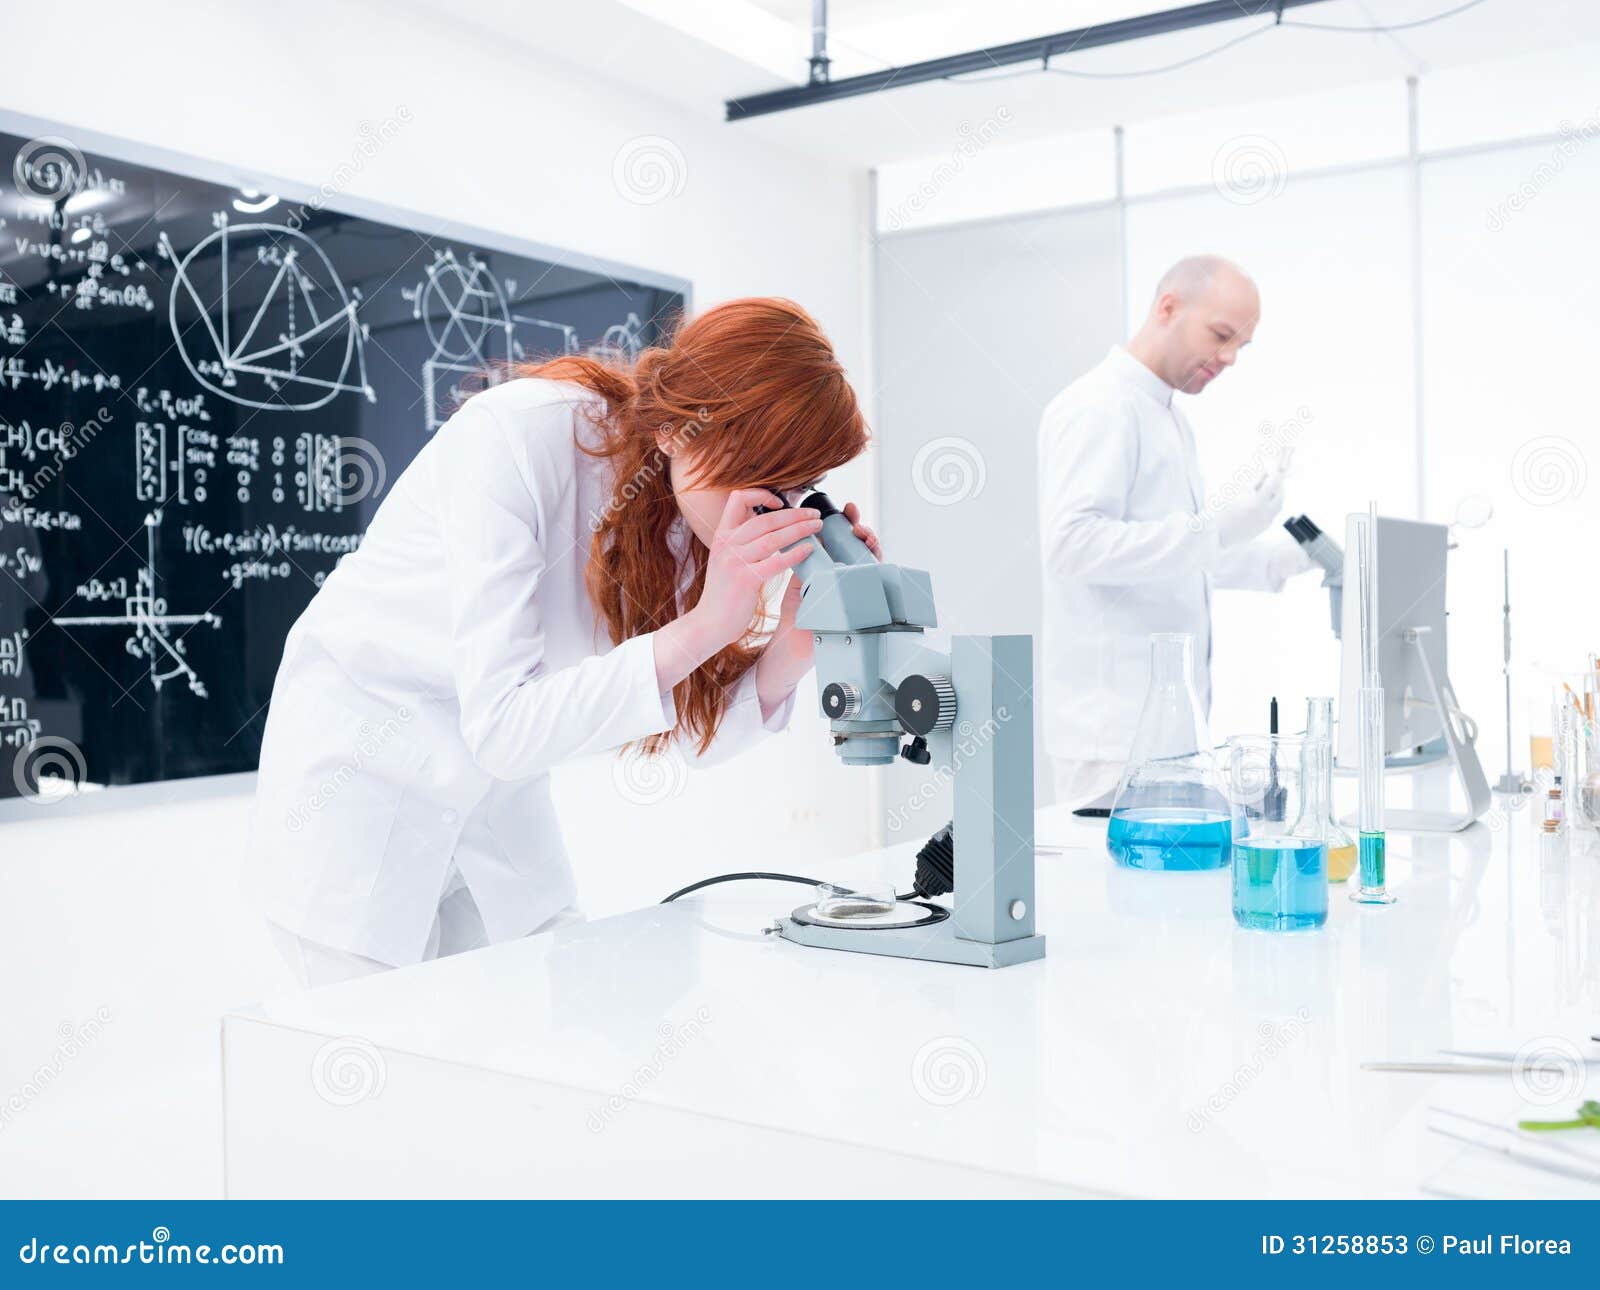 化学实验室实验. 分析在显微镜下的学生的全视图在监督在与实验室工具、五颜六色的液体和一个黑板的实验室桌附近的老师下在背景